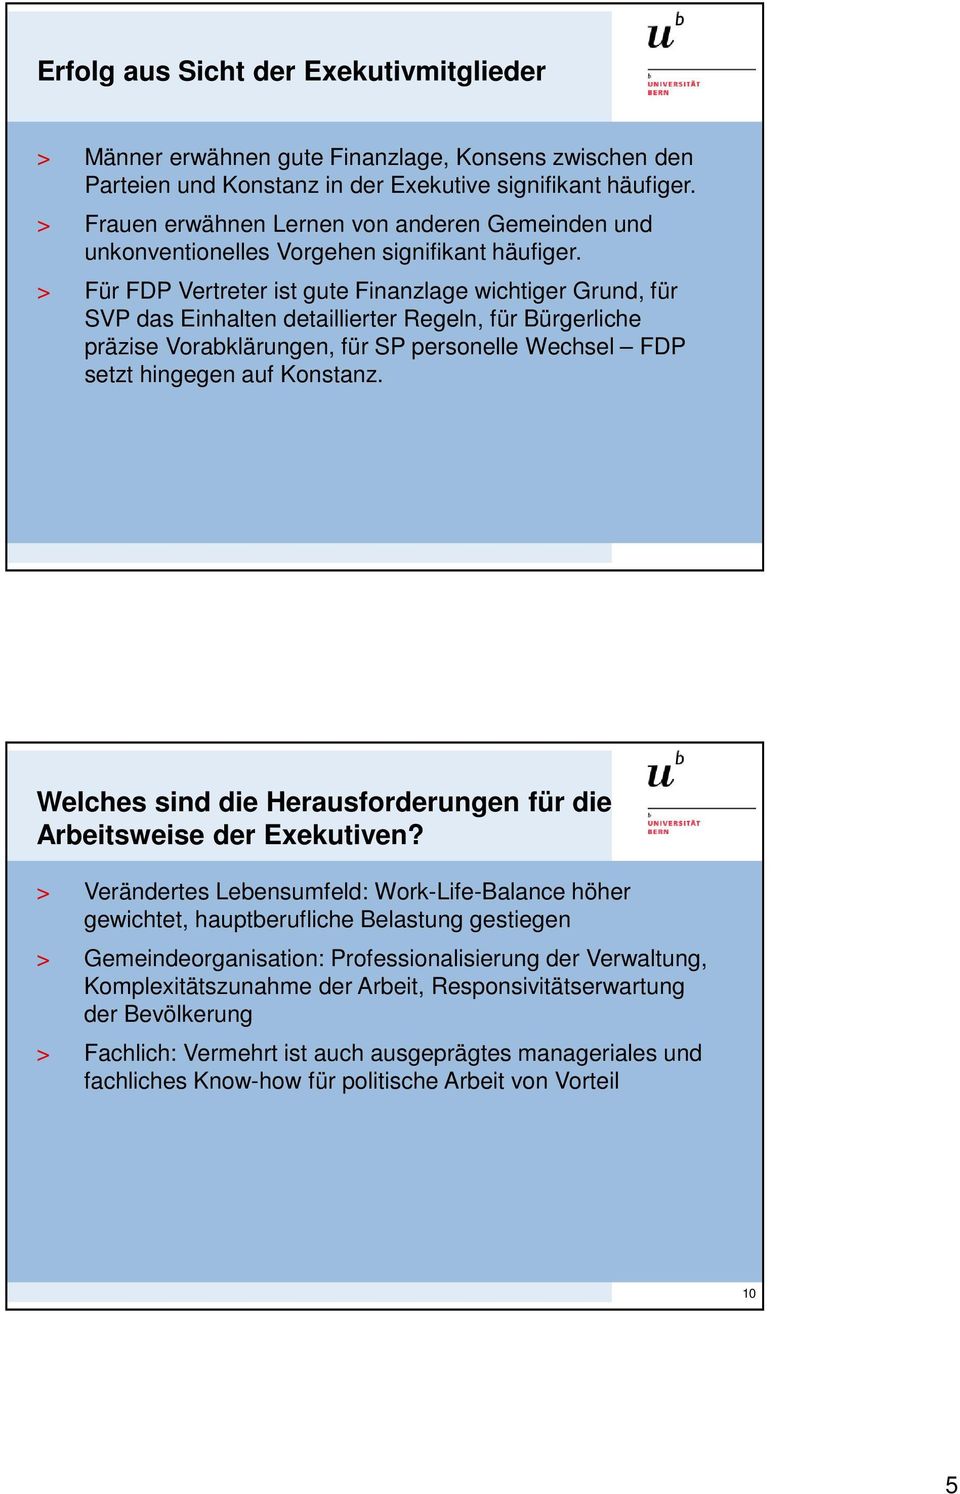 > Für FDP Vertreter ist gute Finanzlage wichtiger Grund, für SVP das Einhalten detaillierter Regeln, für Bürgerliche präzise Vorabklärungen, für SP personelle Wechsel FDP setzt hingegen auf Konstanz.